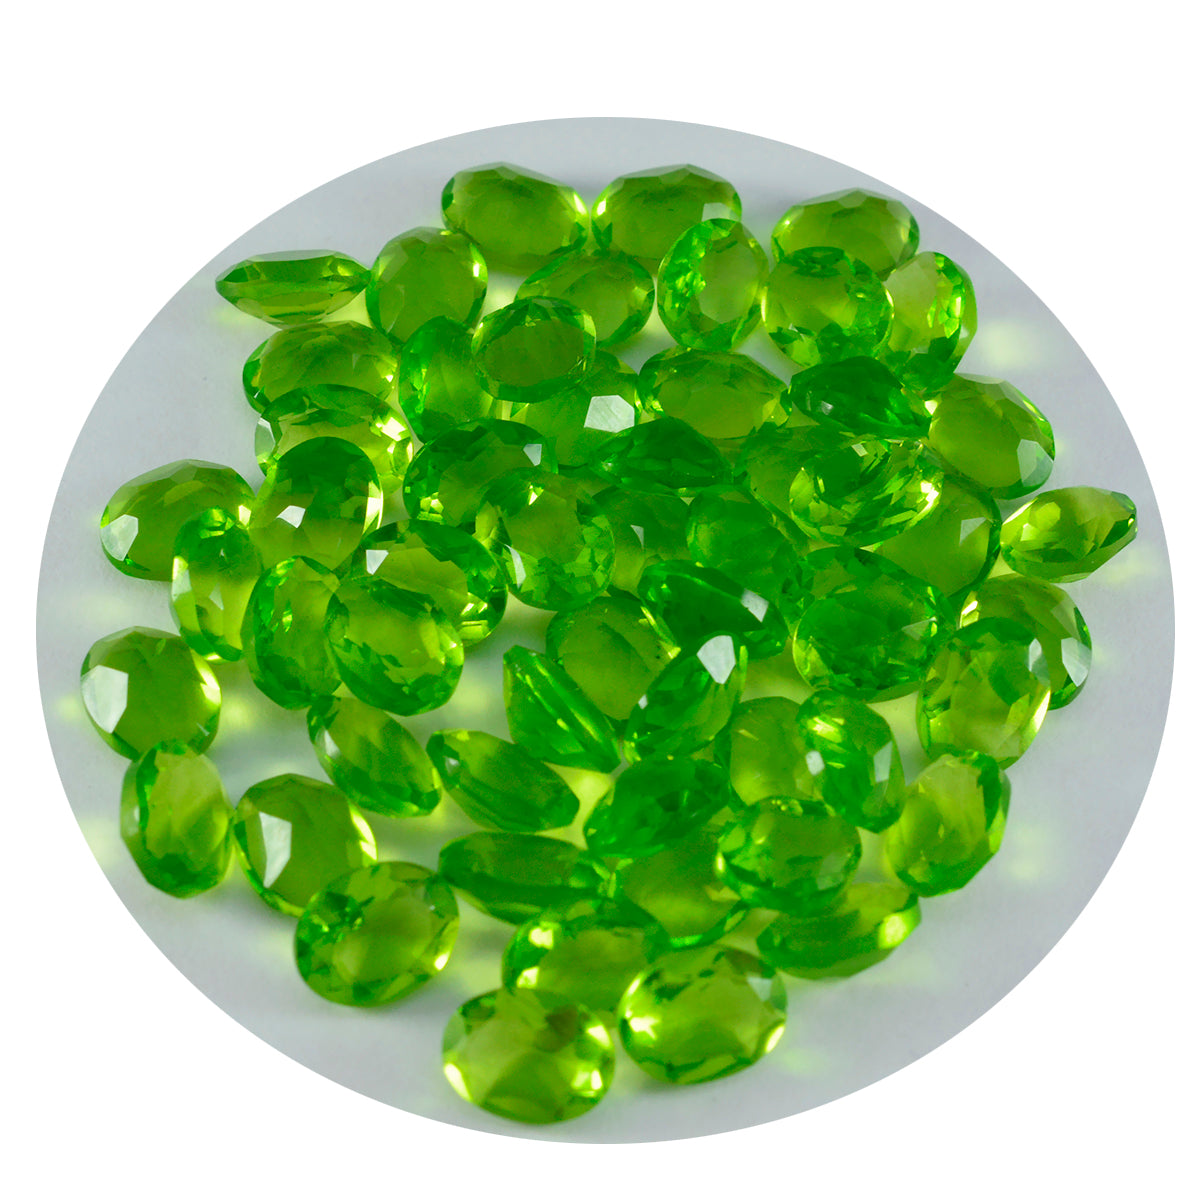 riyogems 1 шт. зеленый перидот cz граненый 5x7 мм овальной формы красивые качественные свободные драгоценные камни